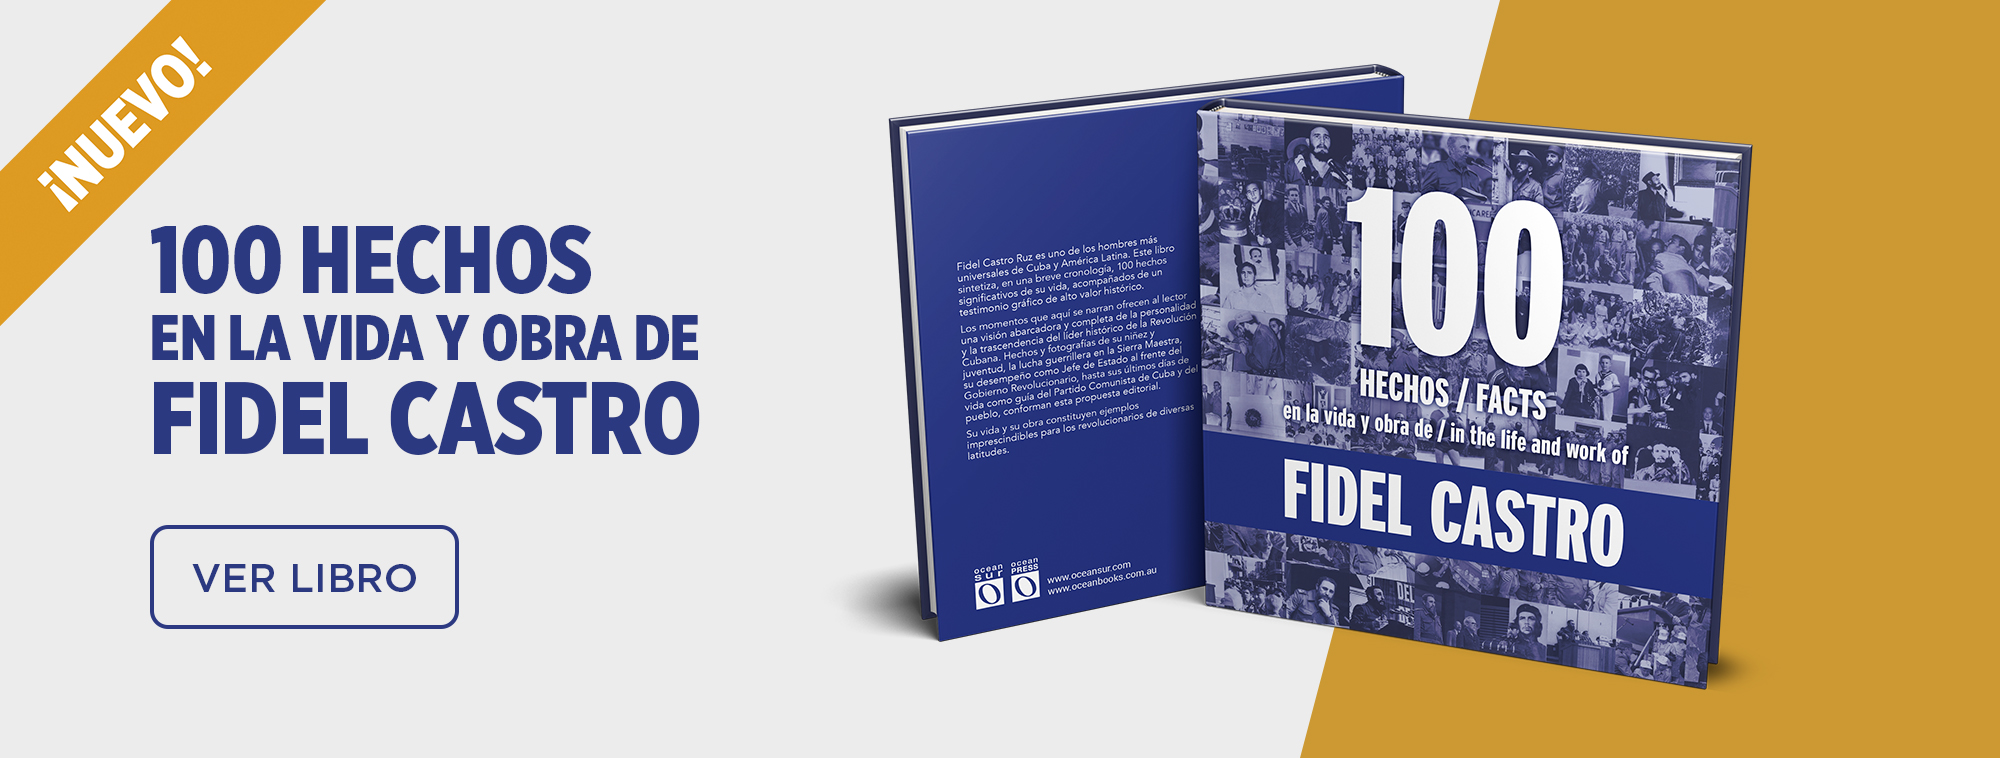 Slider principal_100 hechos Fidel